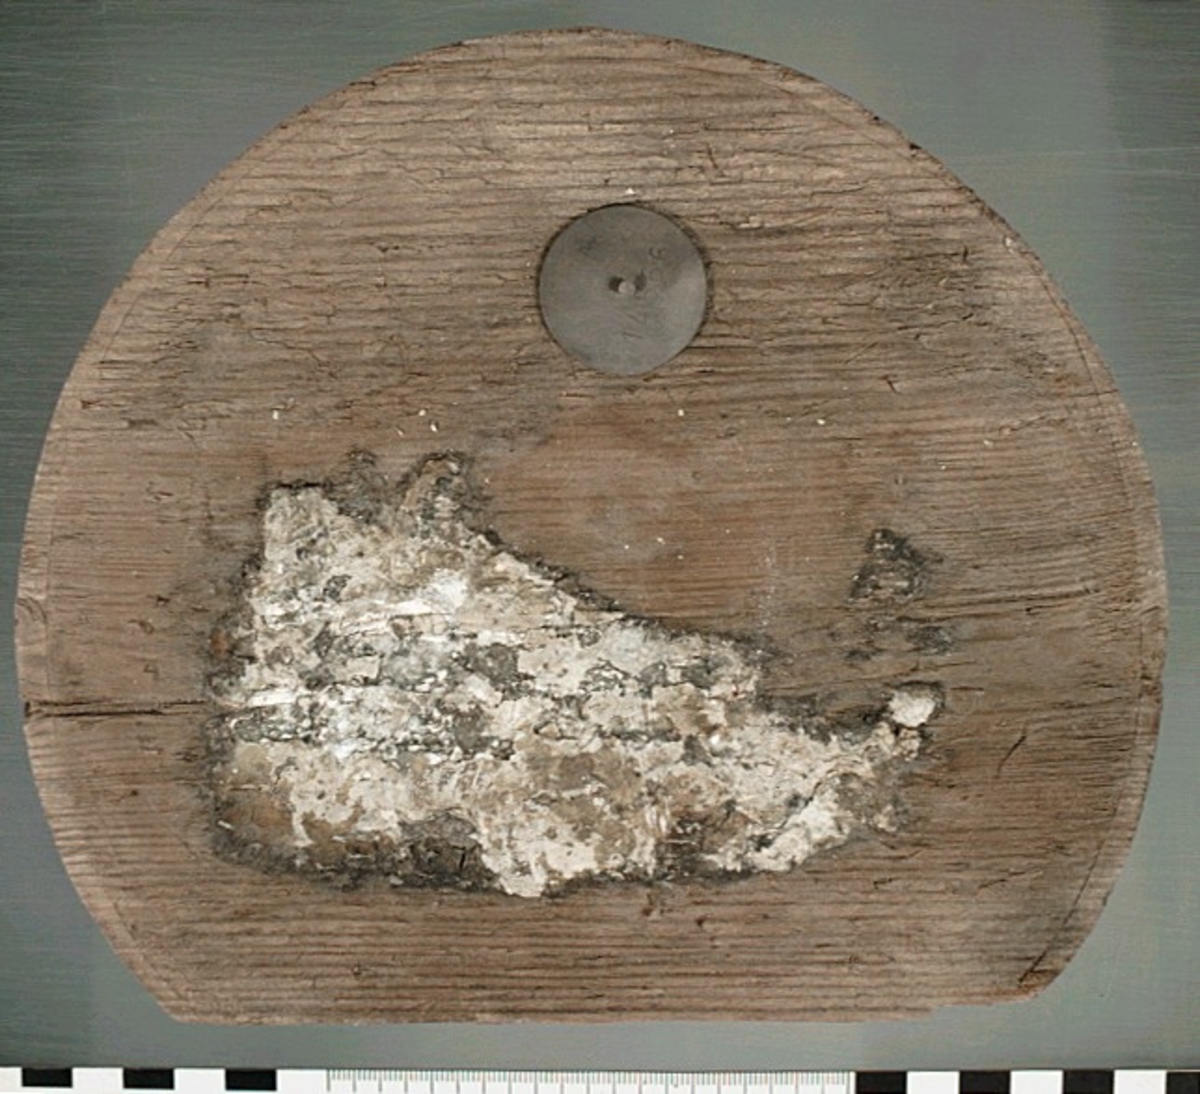 Botten till en bytta eller liten tunna. En del saknas. På föremålet finns vita klumpar som efter analys visats sig vara troliga rester av smör.